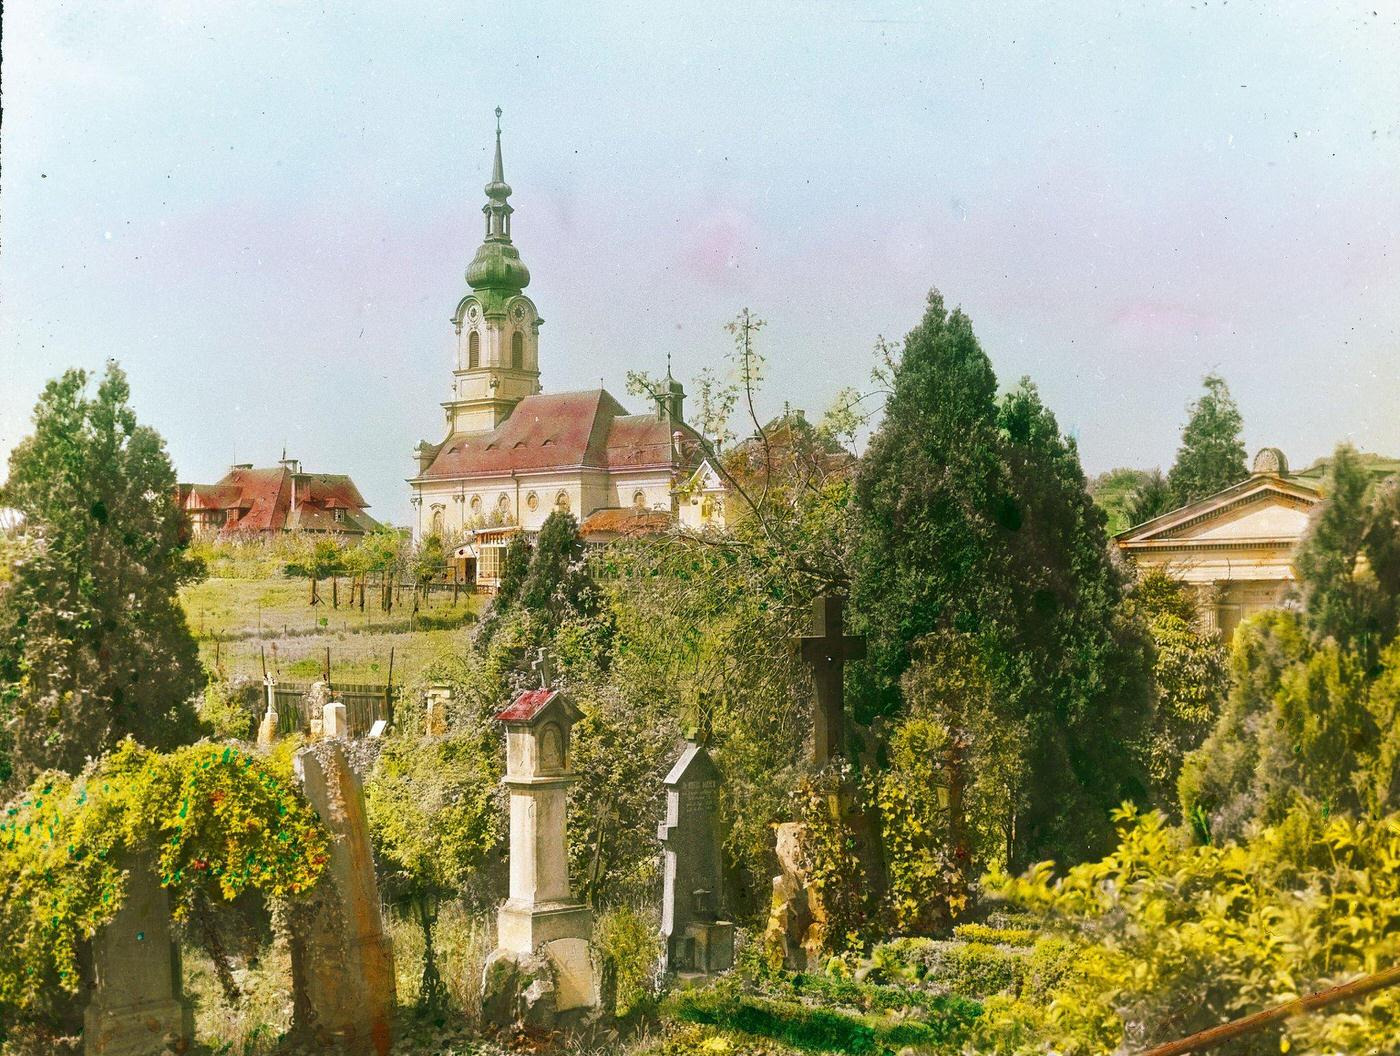 Parish church "Maria Schmerzen" in Grinzing, Vienna's 19th district, 1905.